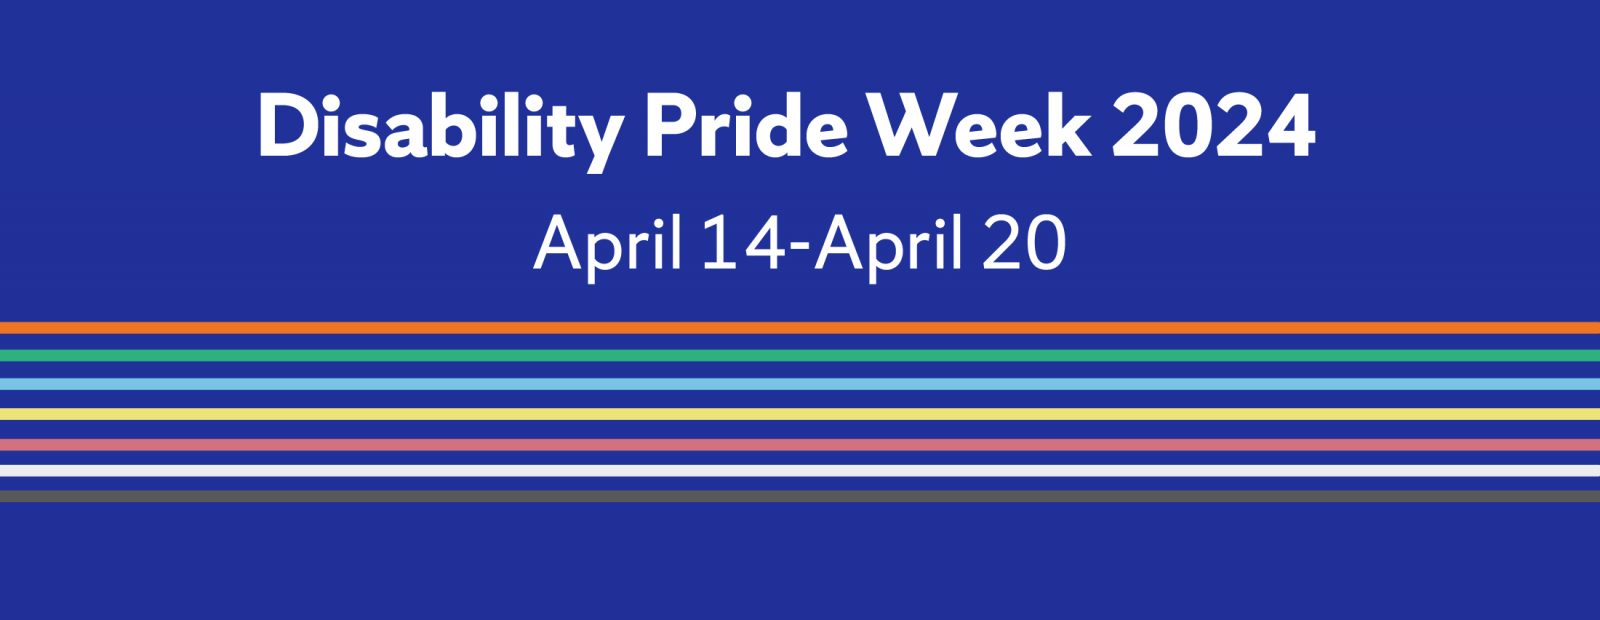 Disability pride week 2024 April 14-April 20